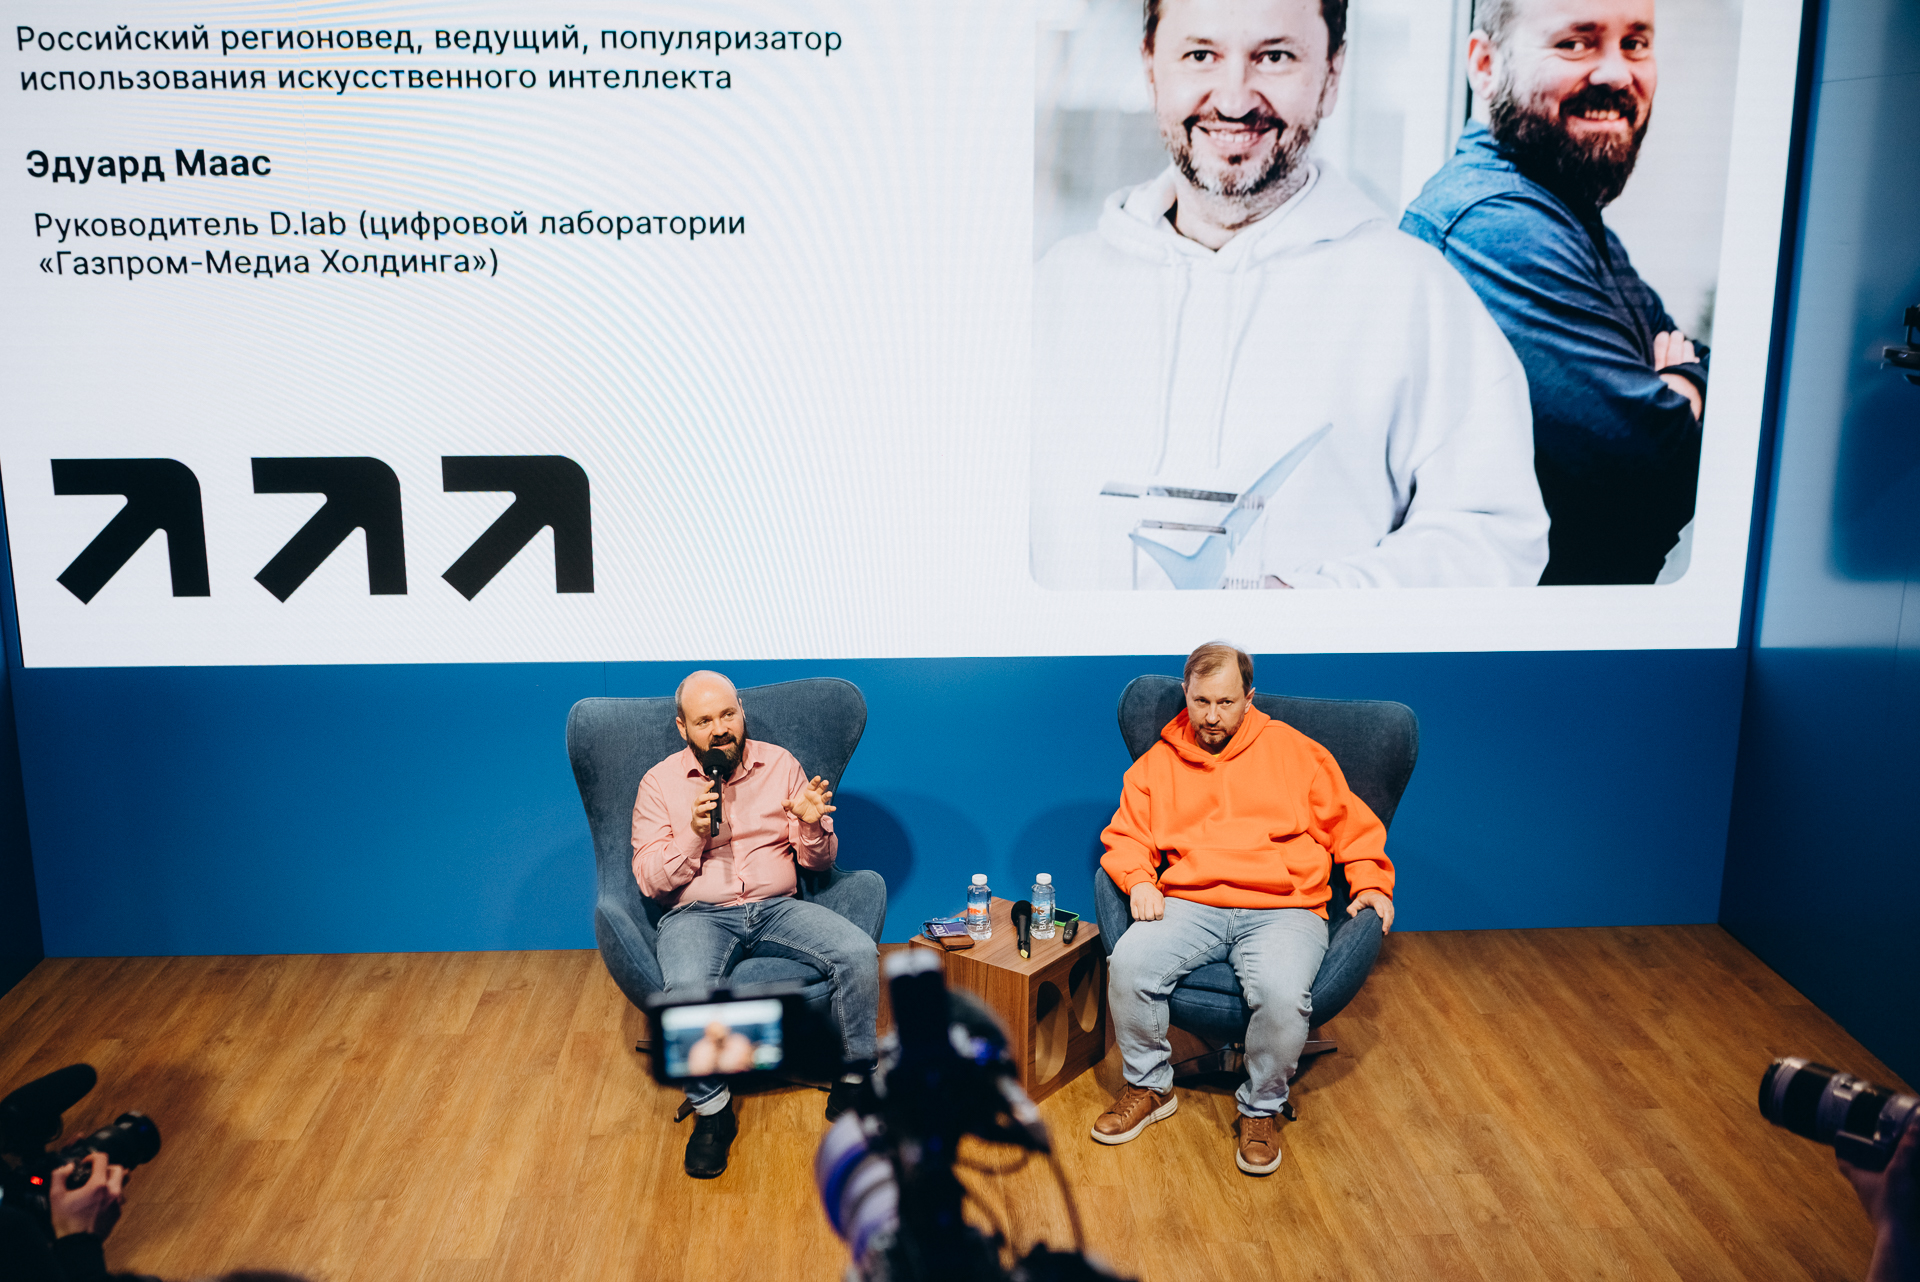 фото: Мастер-класс по работе с искусственным интеллектом прошел на выставке «Россия» 